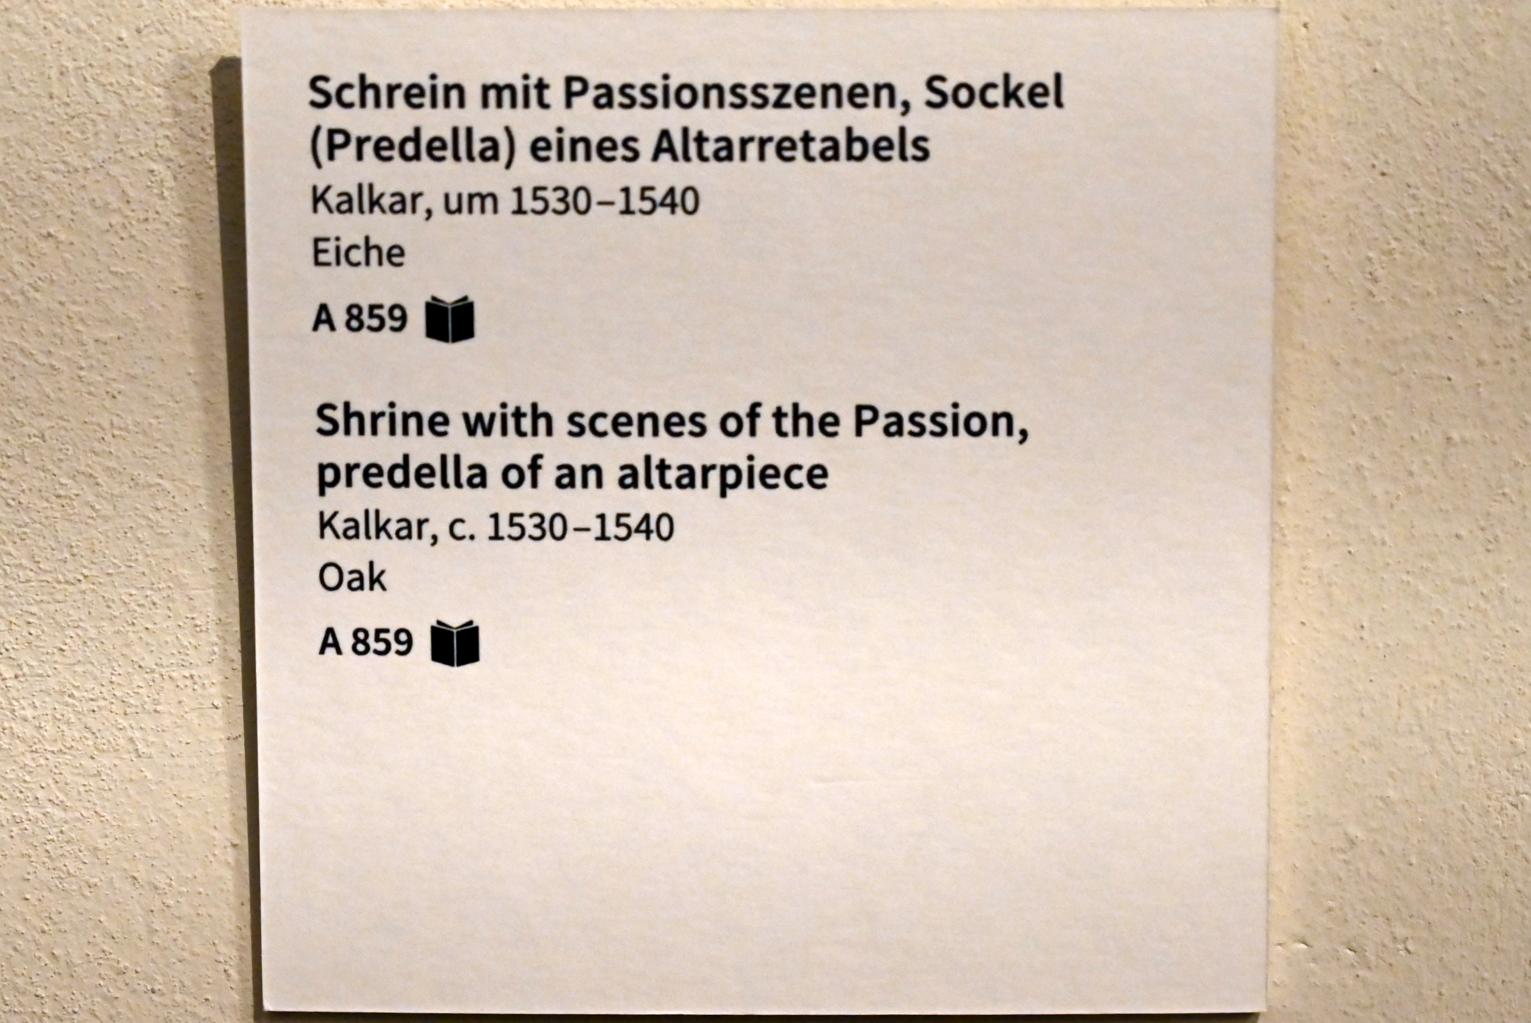 Schrein mit Passionsszenen, Sockel (Predella) eines Altarretabels, Köln, Museum Schnütgen, Saal 8, um 1530–1540, Bild 6/6